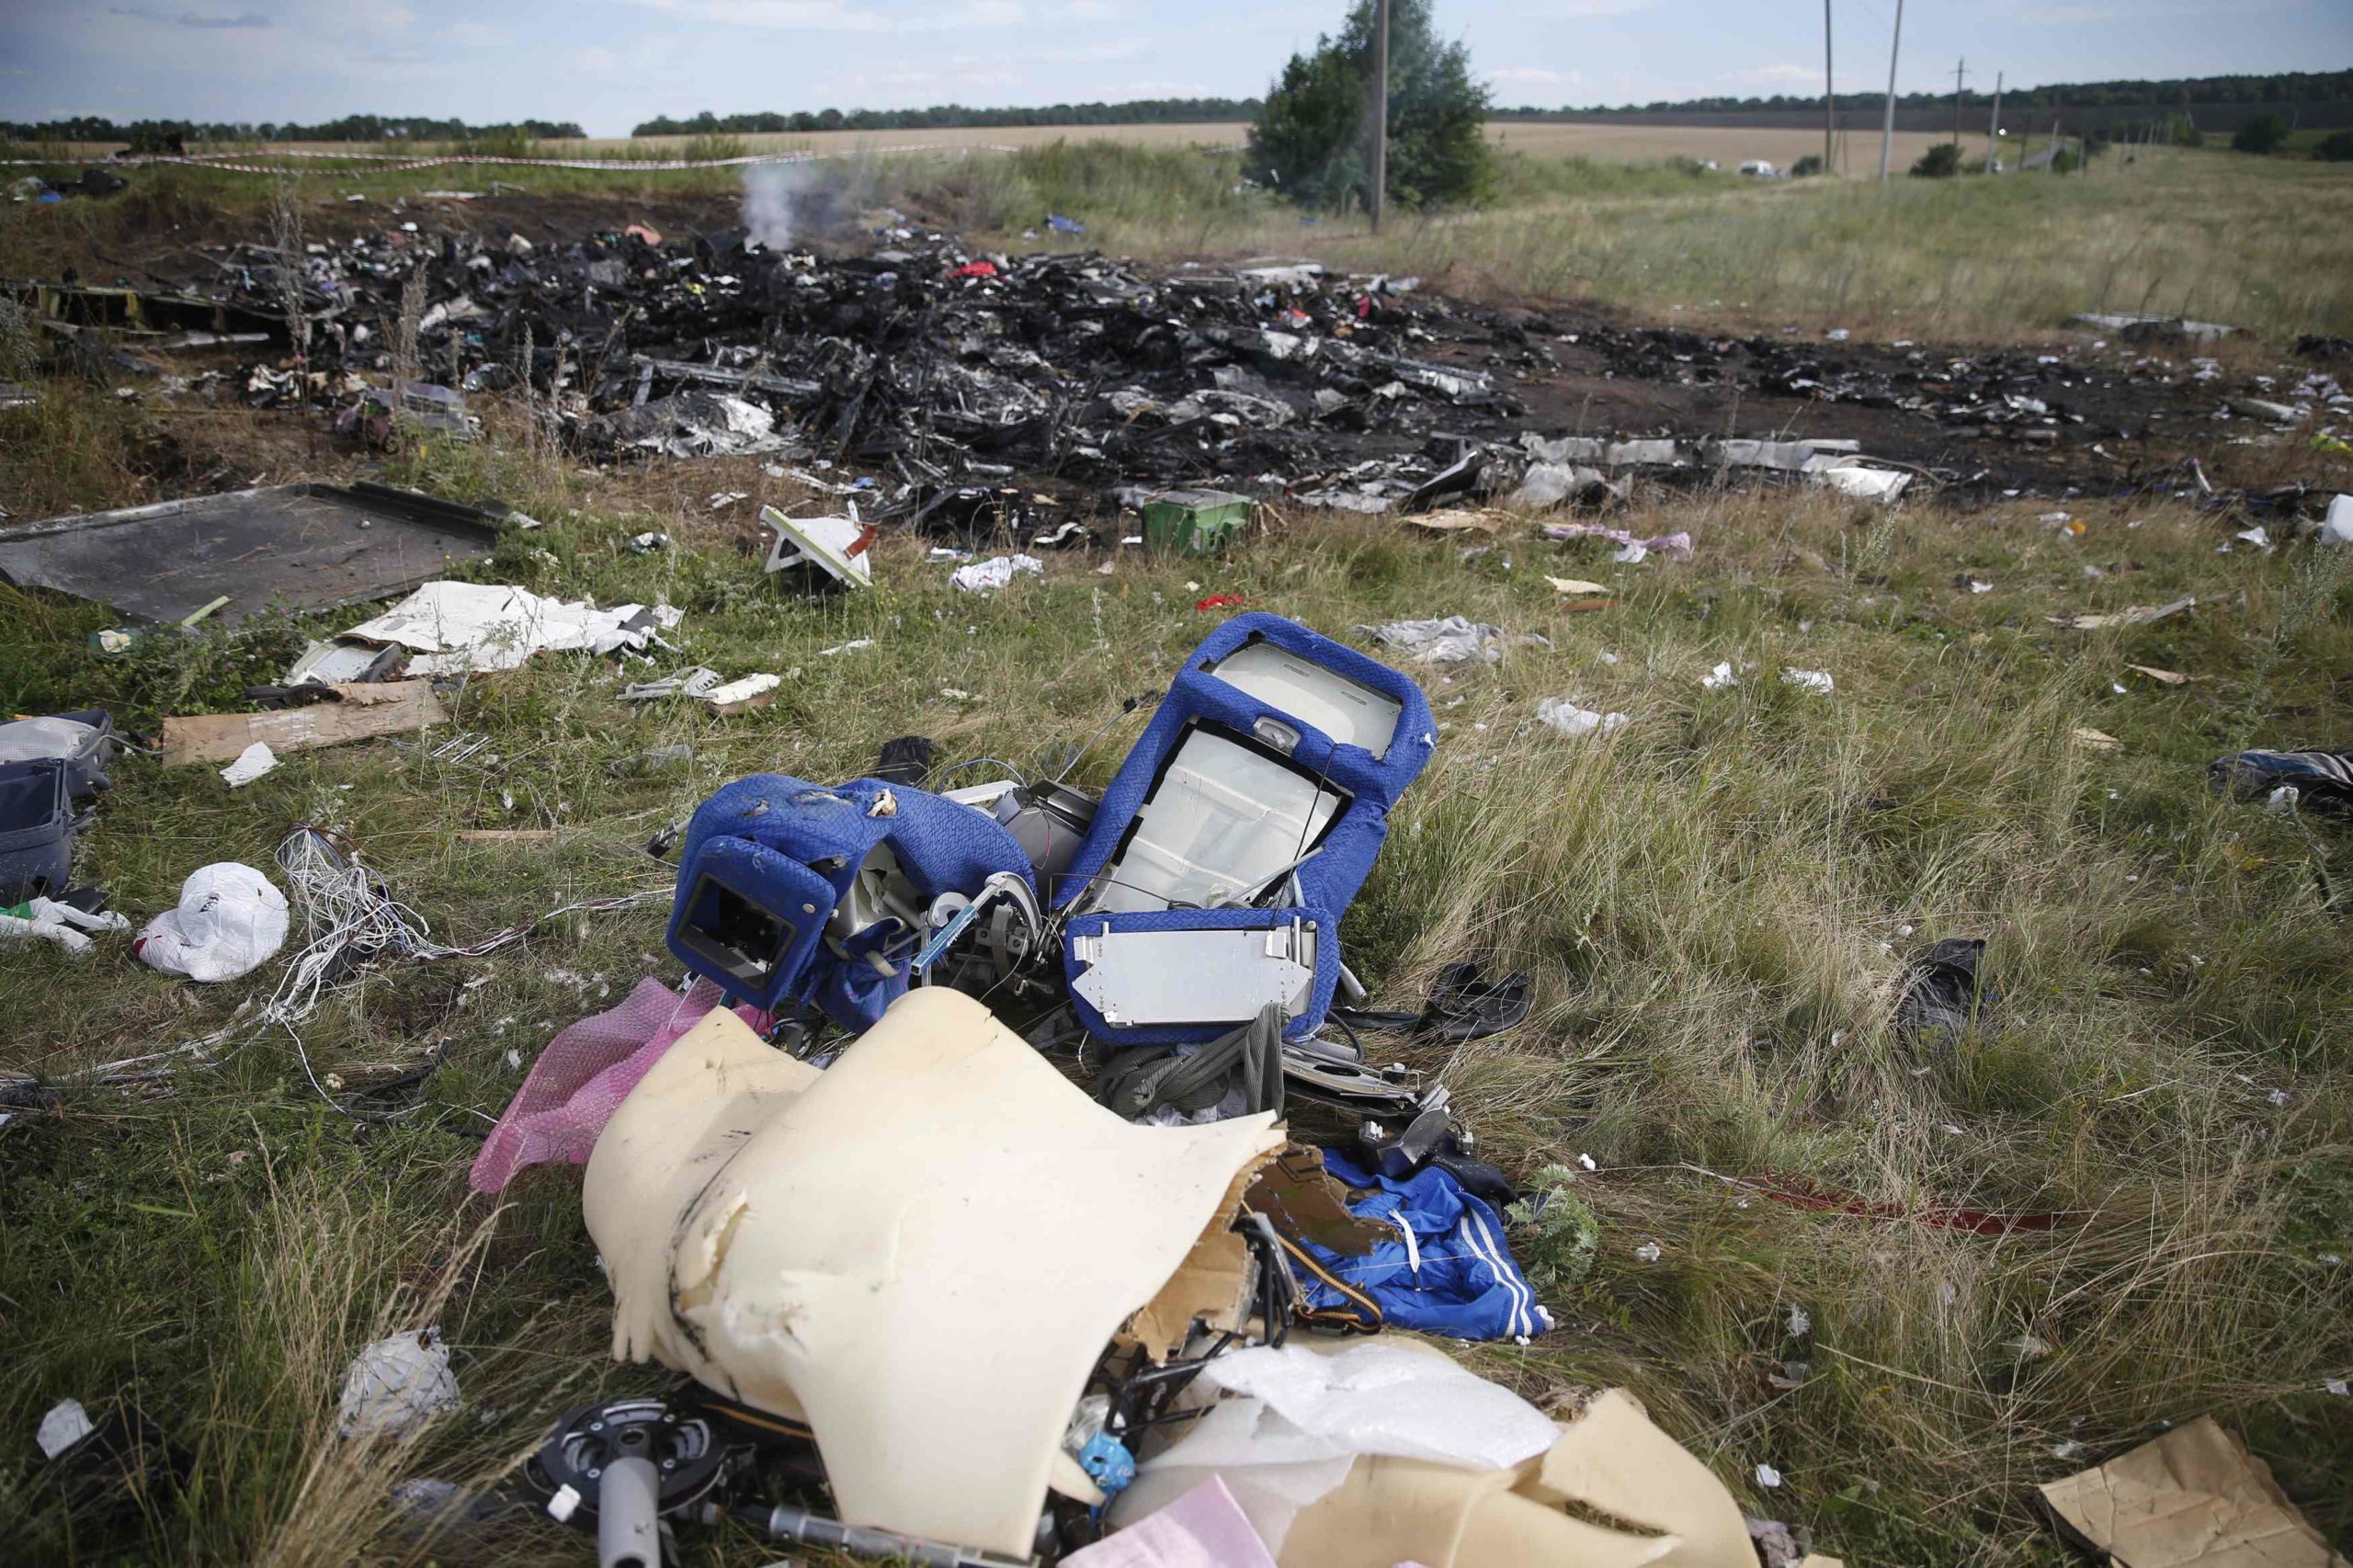 Νέα στοιχεία “δείχνουν” οι Ολλανδοί για τη συντριβή της πτήσης MH17 στην Ουκρανία